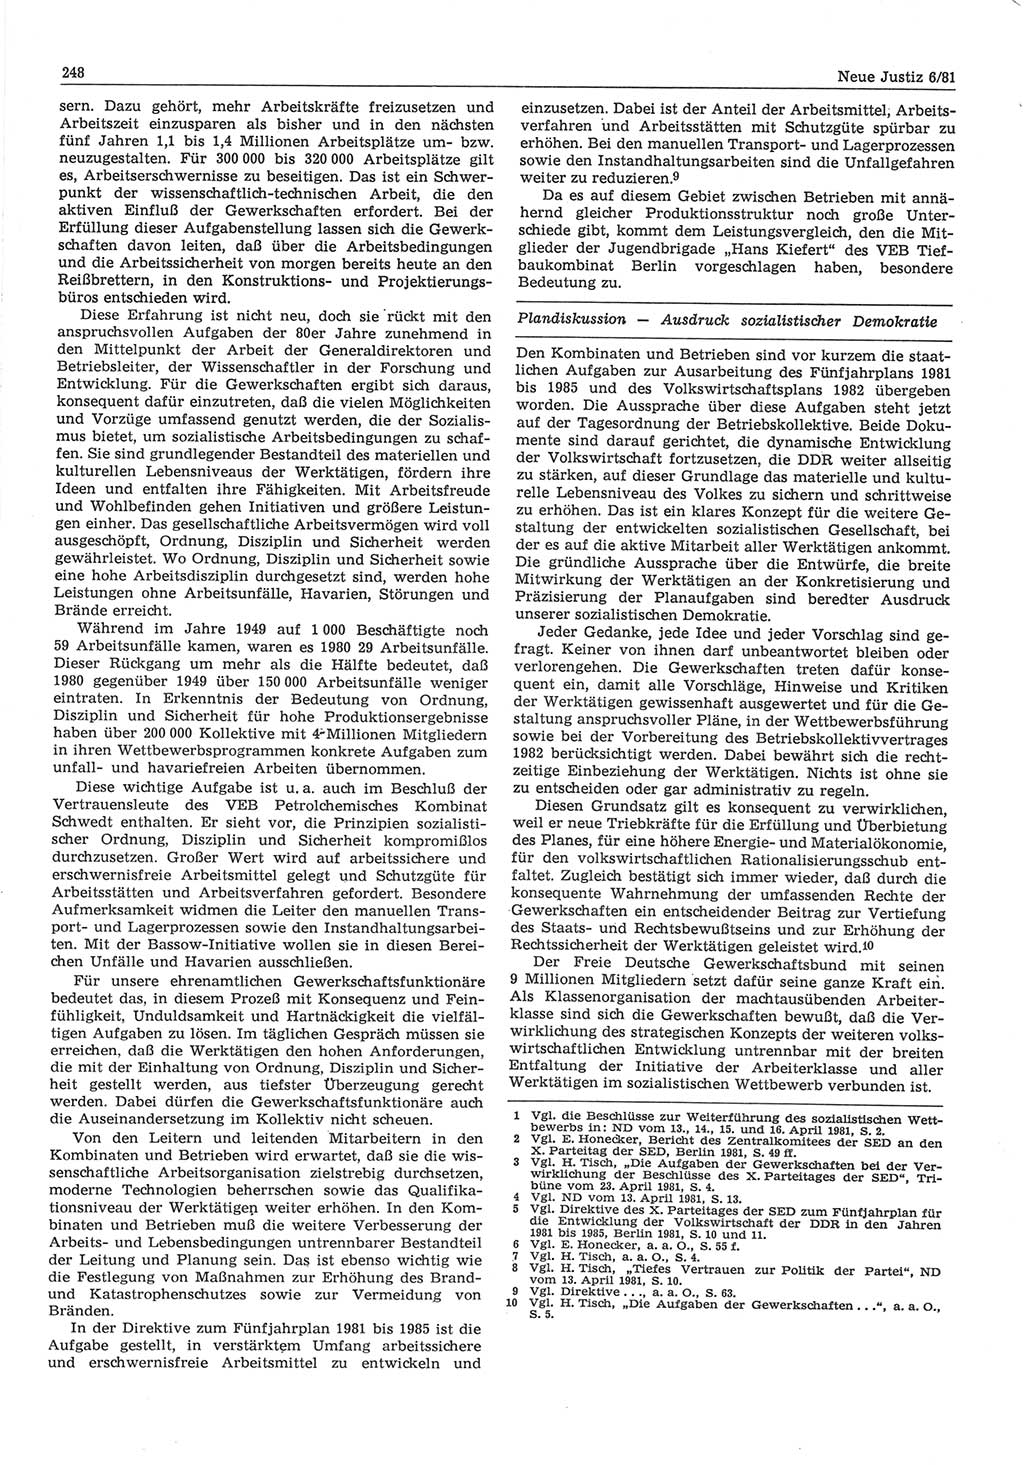 Neue Justiz (NJ), Zeitschrift für sozialistisches Recht und Gesetzlichkeit [Deutsche Demokratische Republik (DDR)], 35. Jahrgang 1981, Seite 248 (NJ DDR 1981, S. 248)